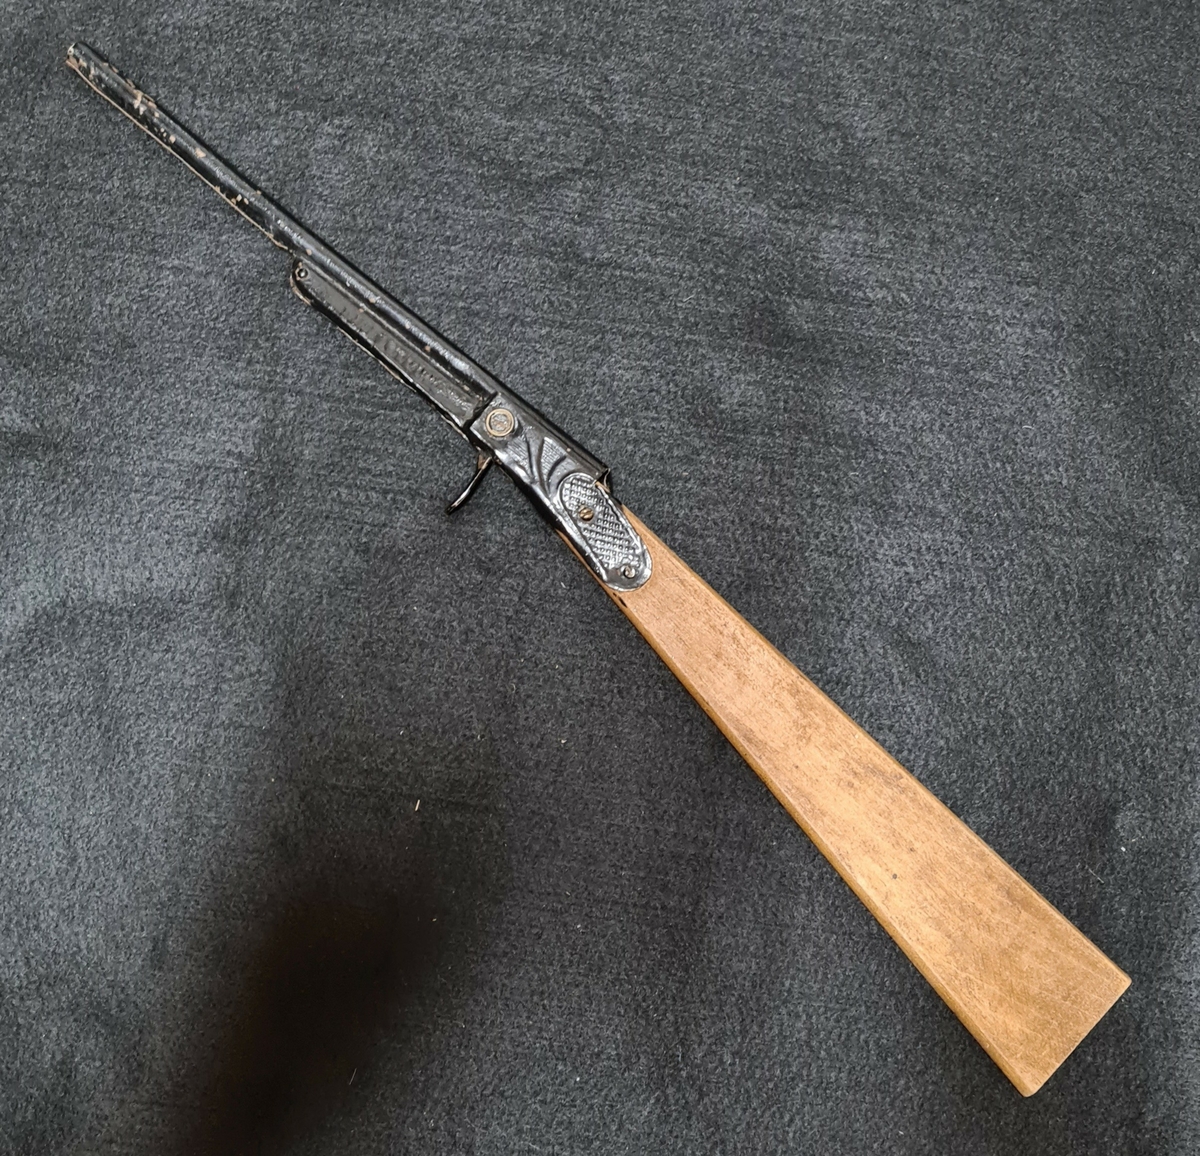 Tio leksaksvapen, två pistoler, ett gevär samt sju revolvrar av trä, metall och plast. Vapnen skjutes varierande med knallpulverremsor, knallhattar, eller med spännfjäder och kork. Vapnen är tillverkade i Tyskland, Japan och Italien på 1940-70-talen. Mått: L. 5 - 46,3 cm.